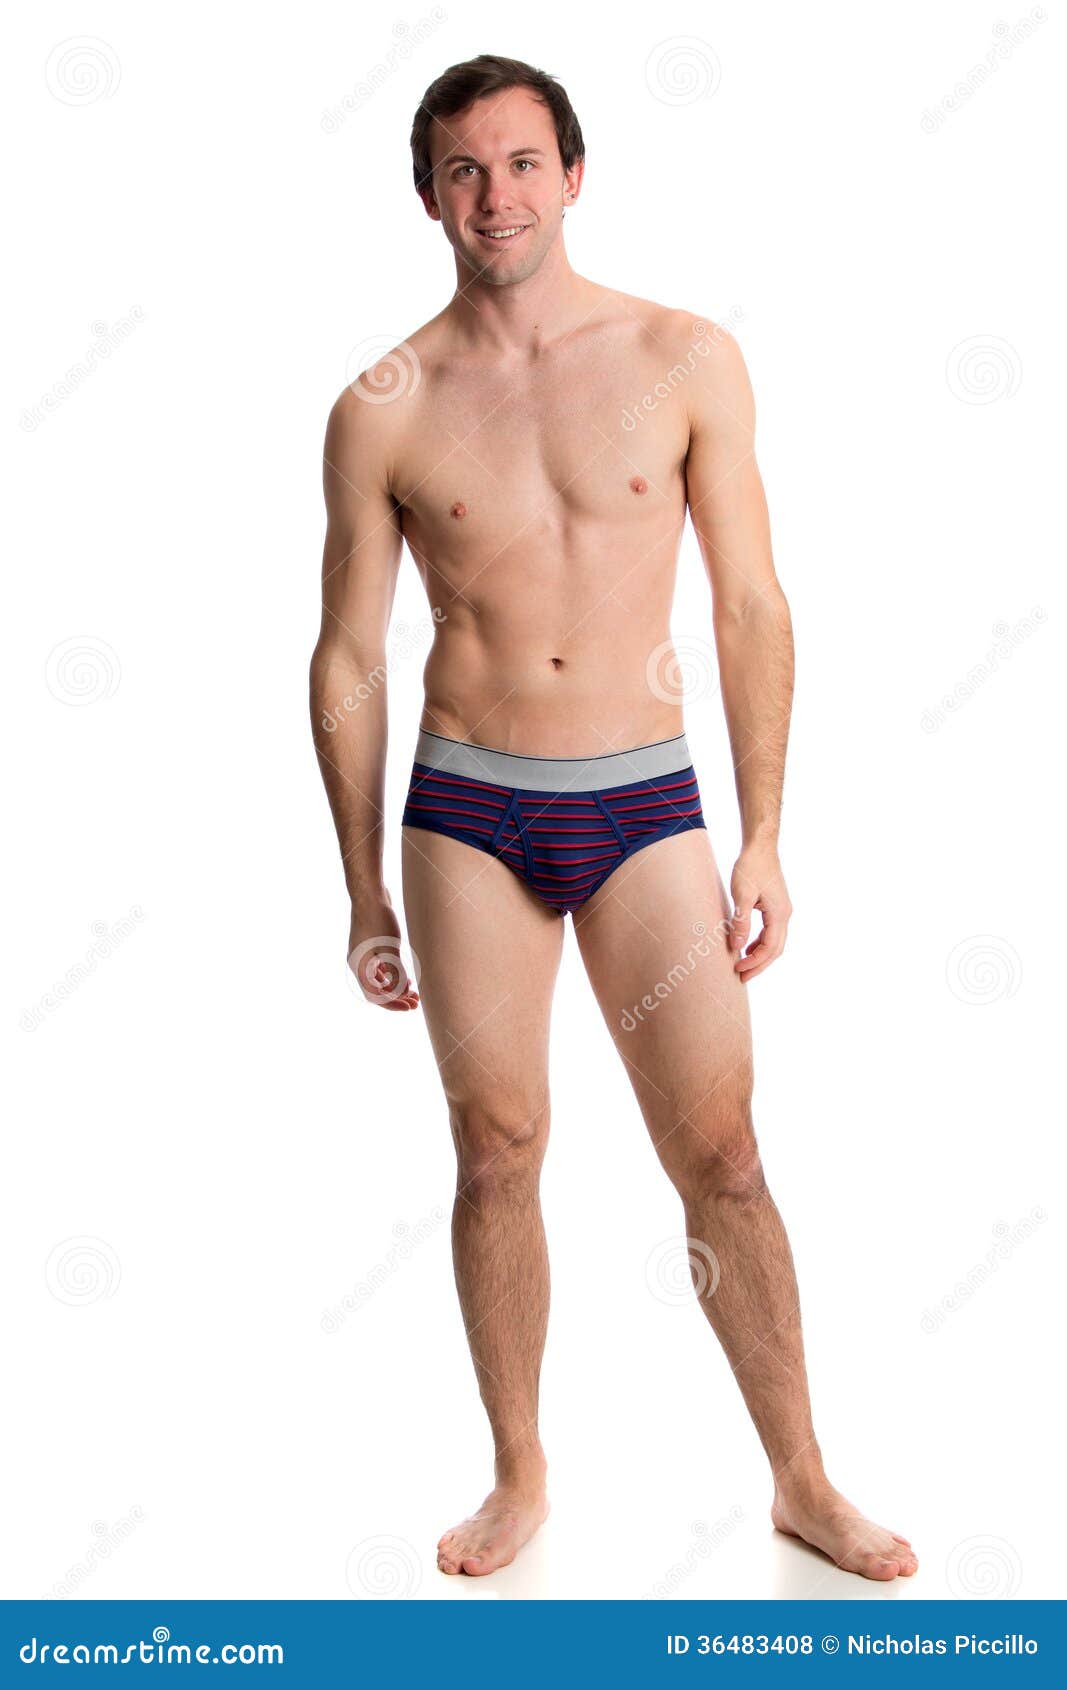 man in underwear